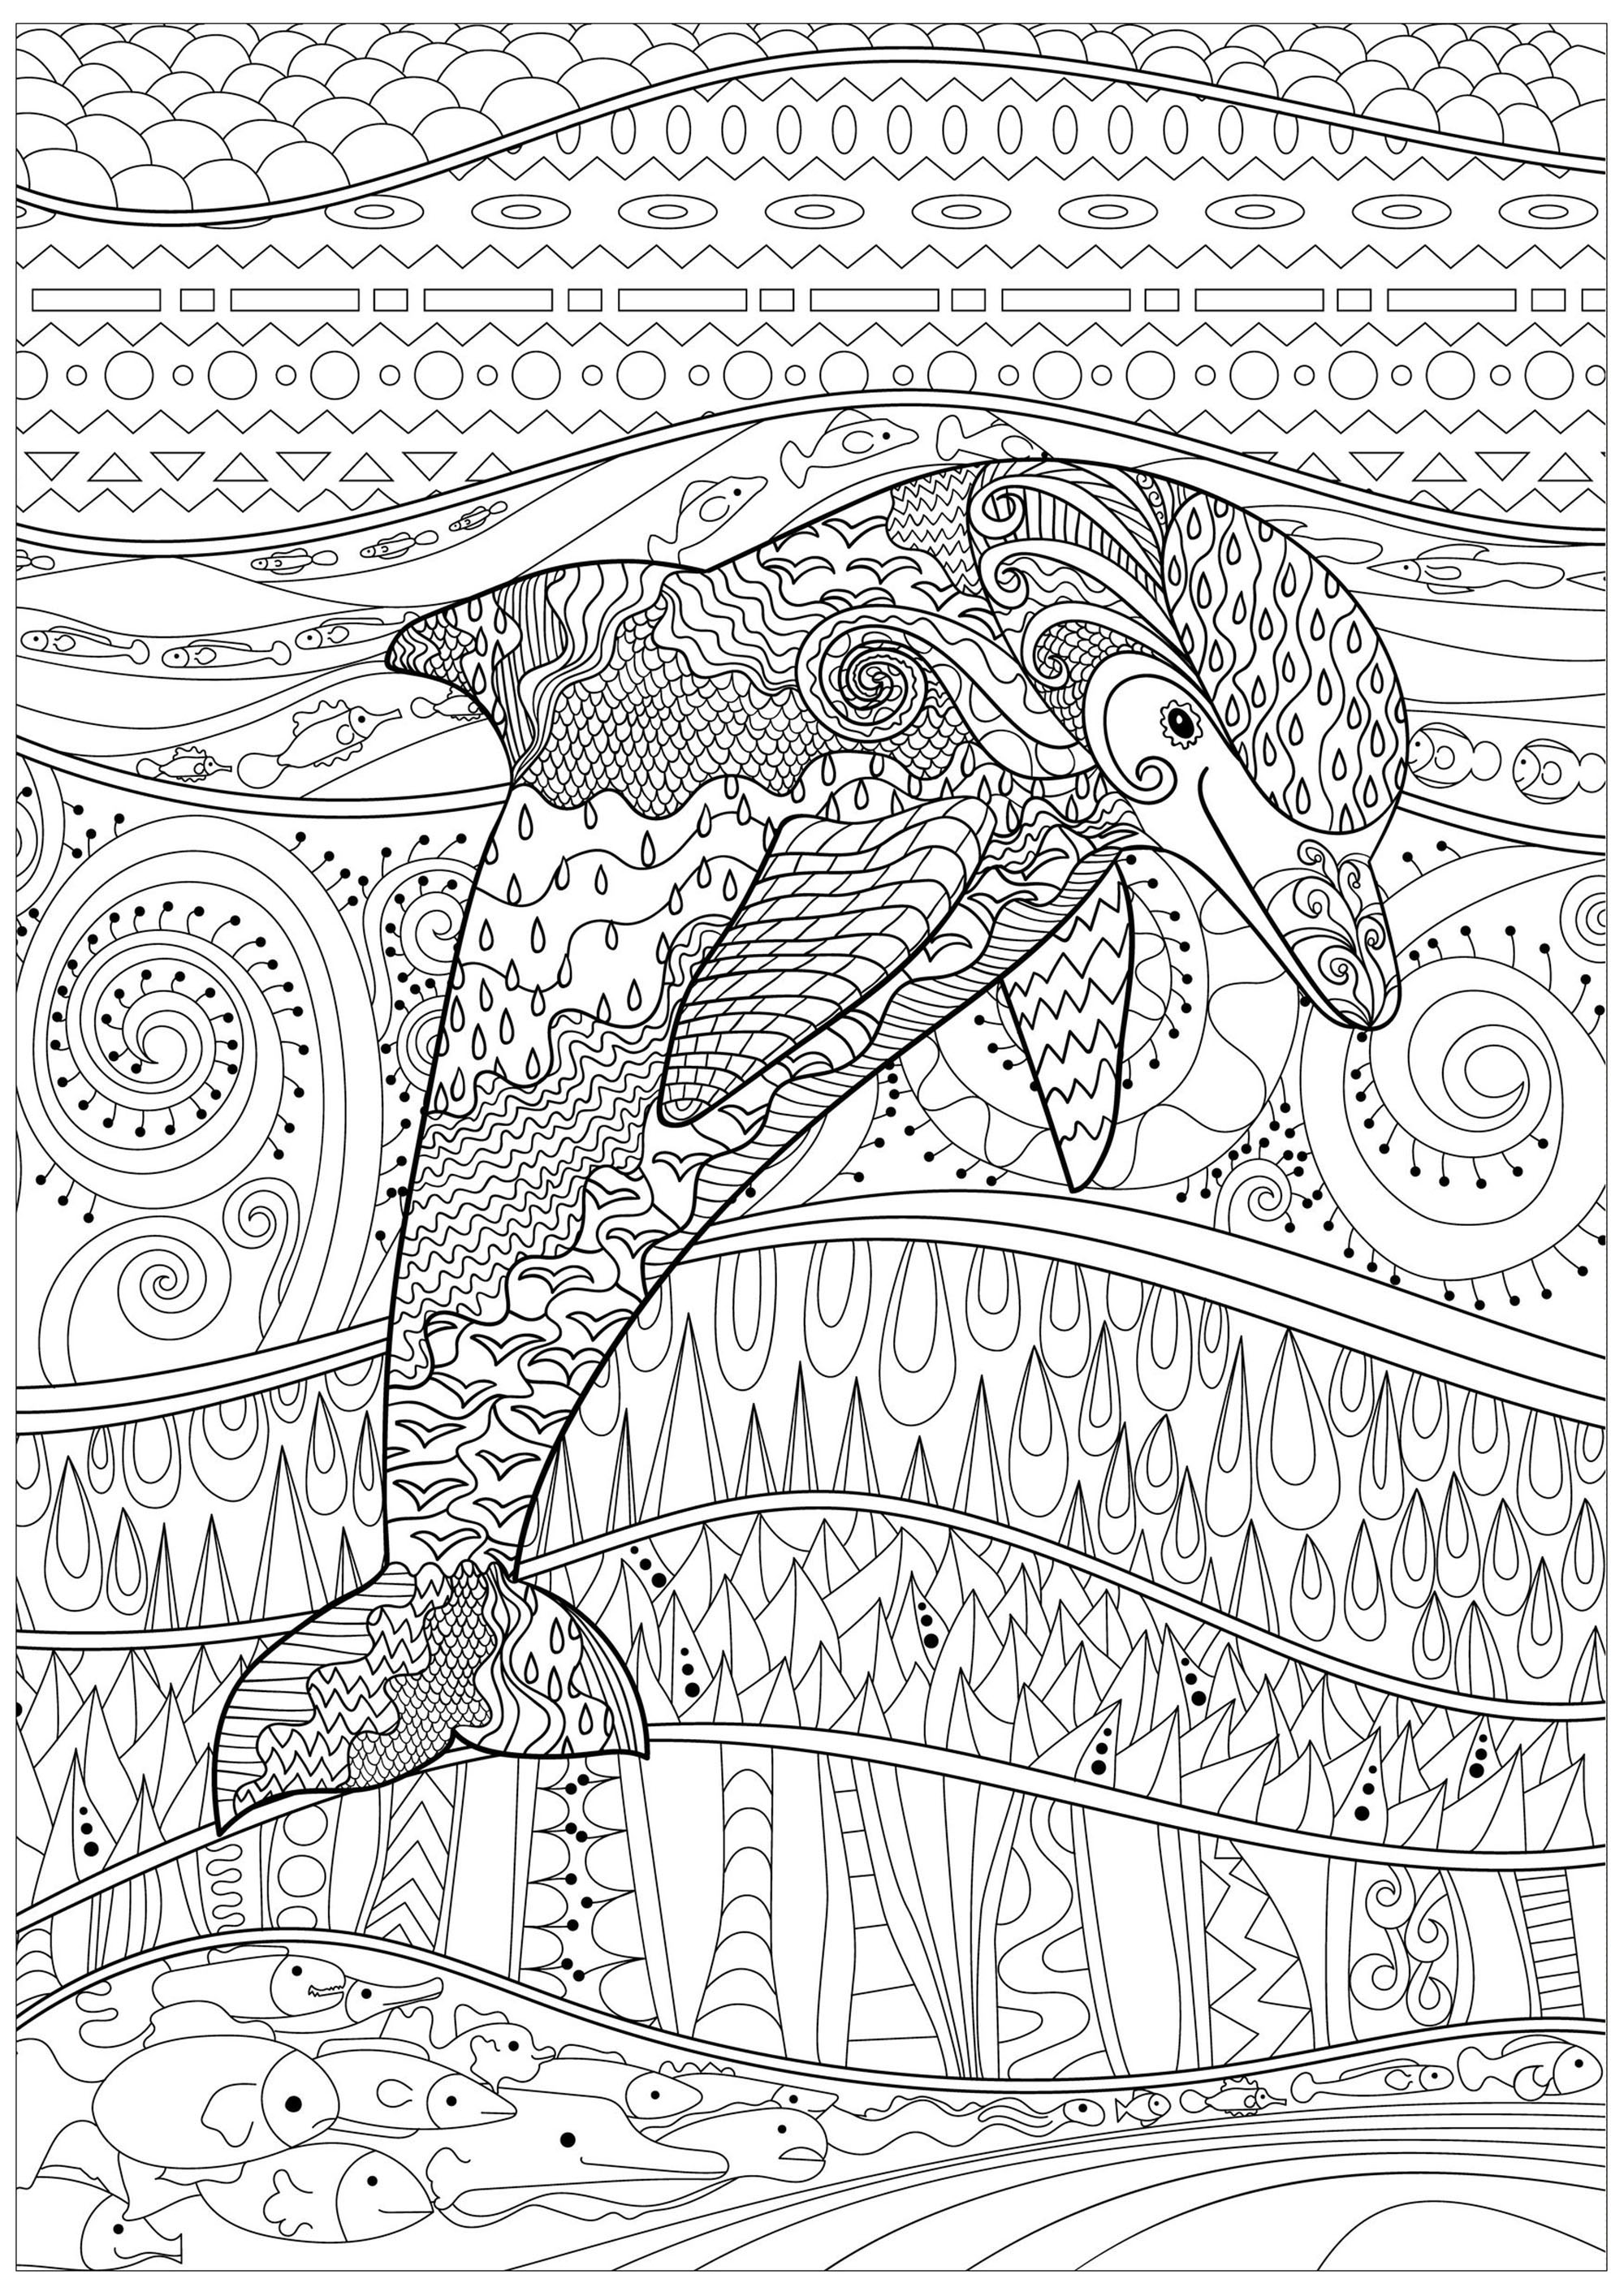 Delphin in einem ruhigen Meer, mit Fischen und schönen, abstrakten und komplexen Mustern, innerhalb und außerhalb seines Körpers, Quelle : 123rf   Künstler : Anna Lezhepekova